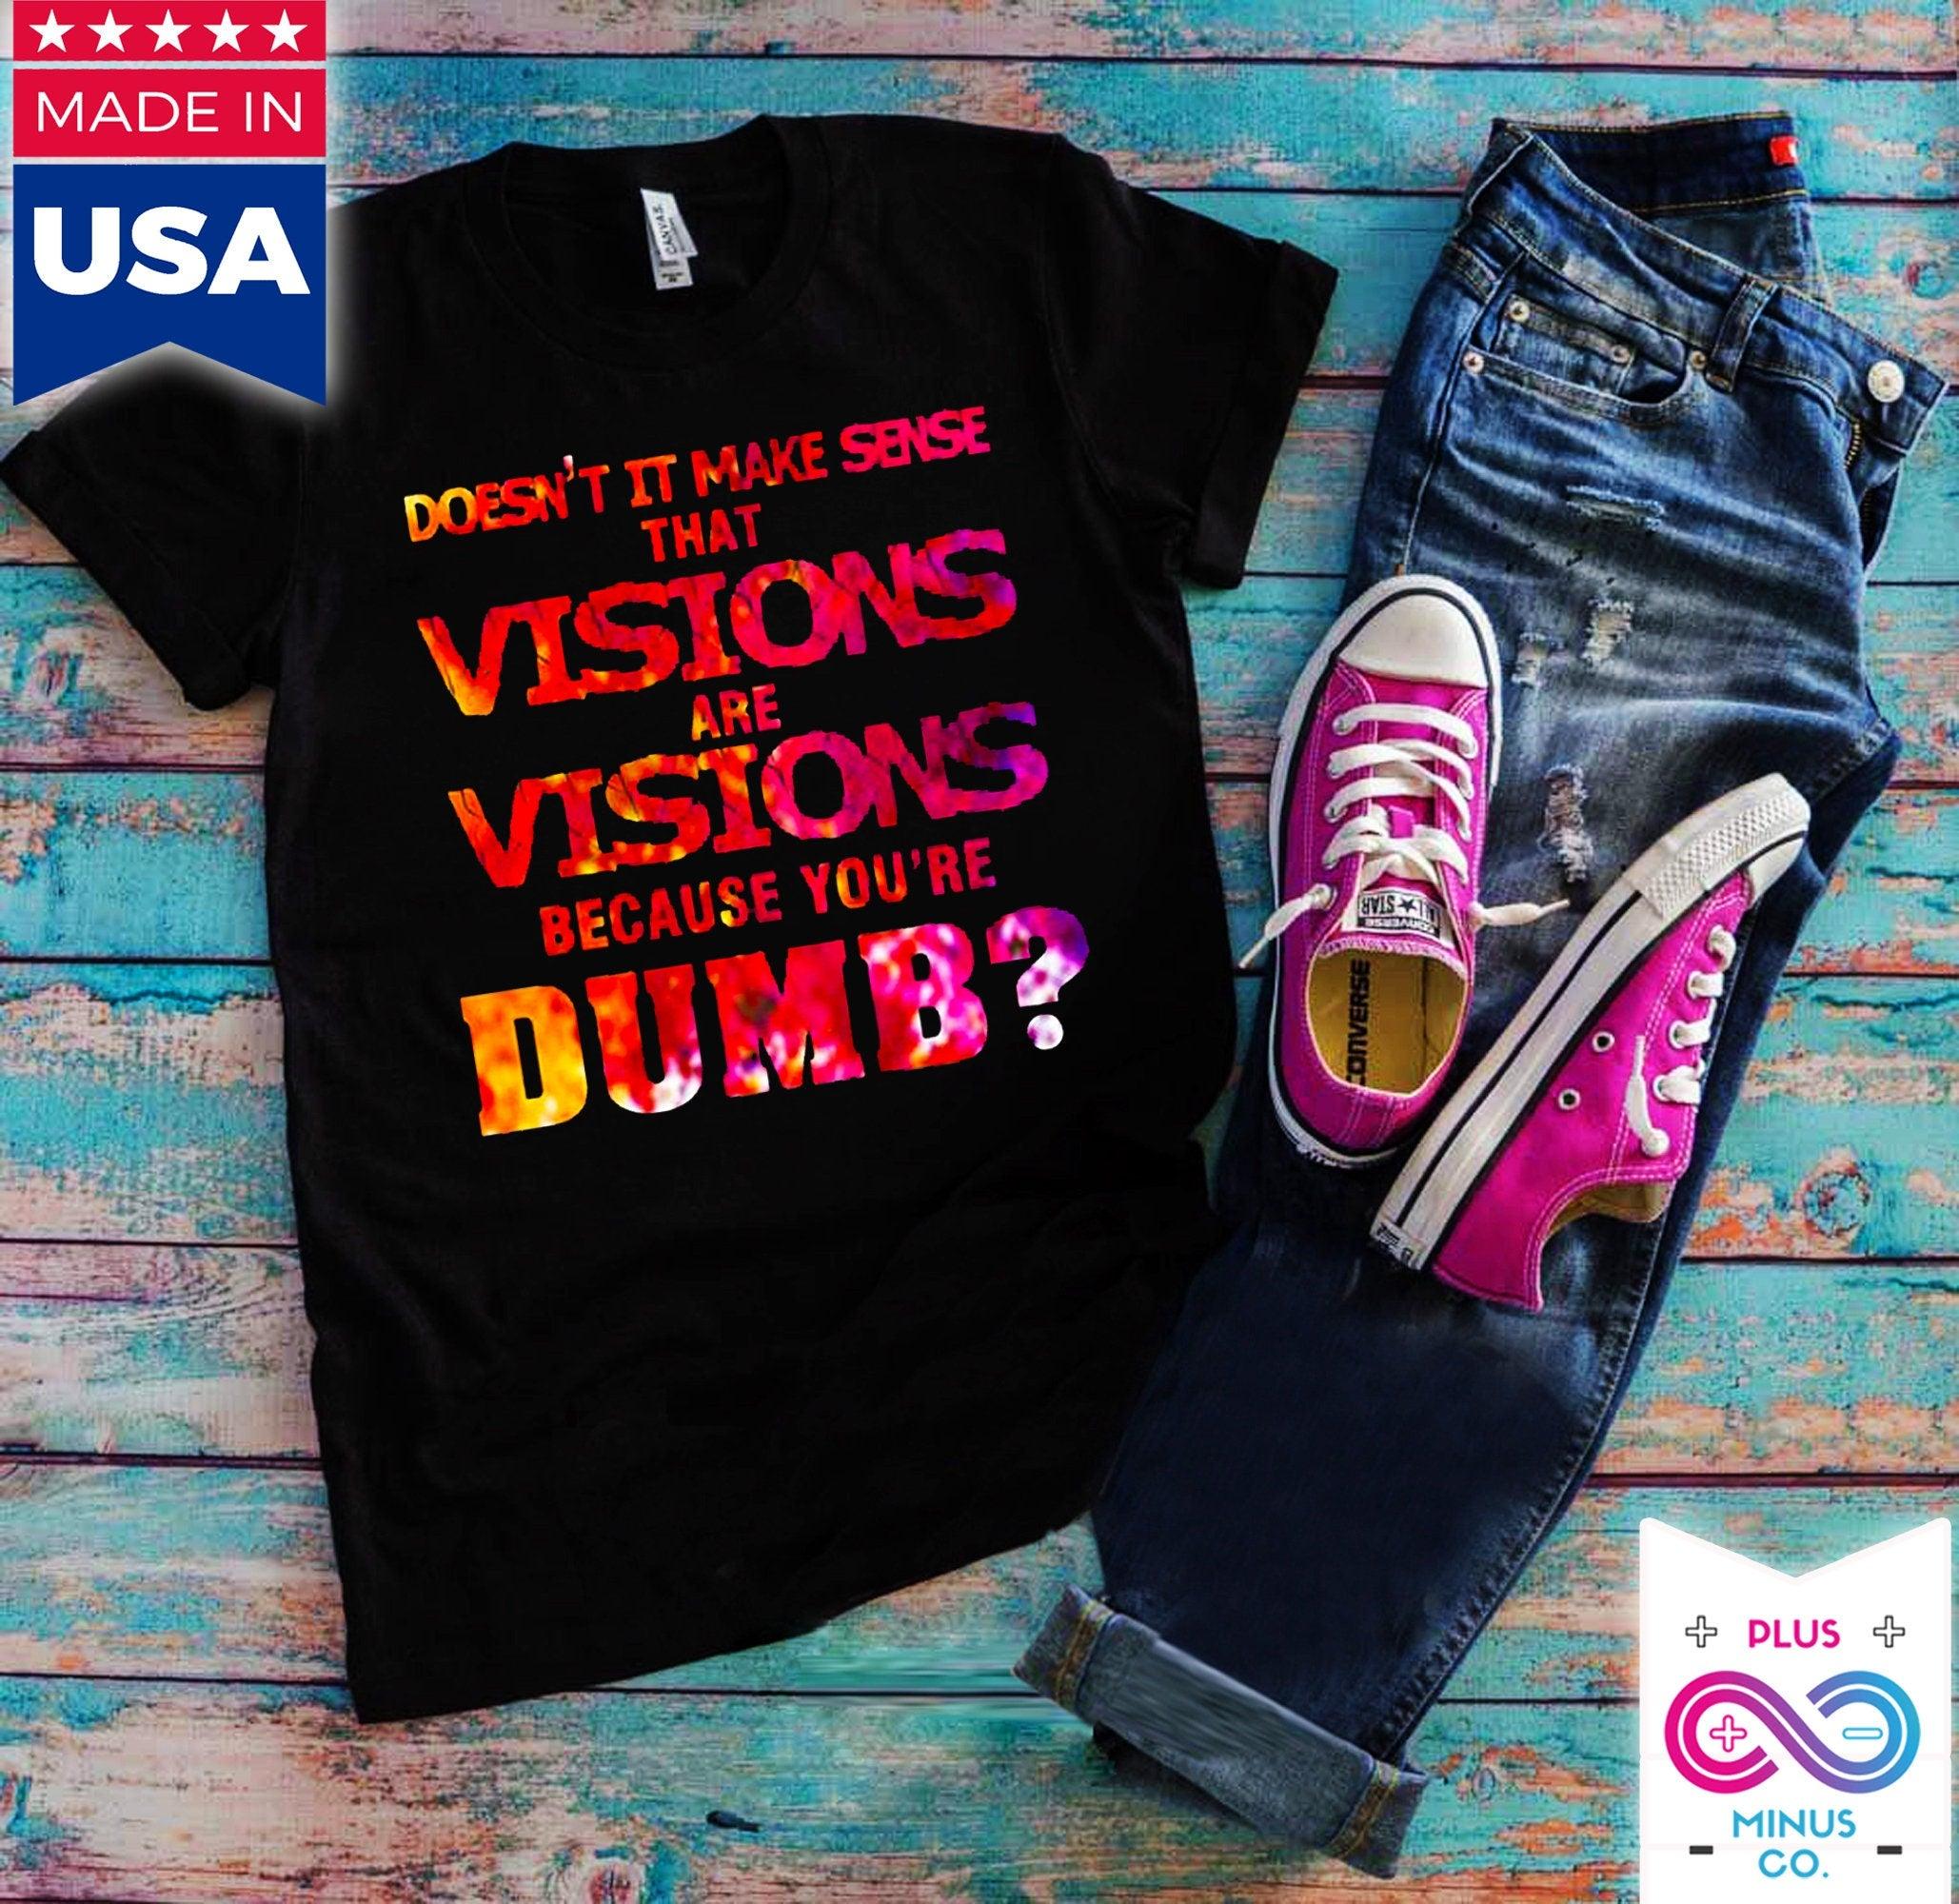 Visions є Visions, тому що ви тупі Футболки, смішні футболки, саркастичні, новинки, для жінок, День матері, подарунки - plusminusco.com